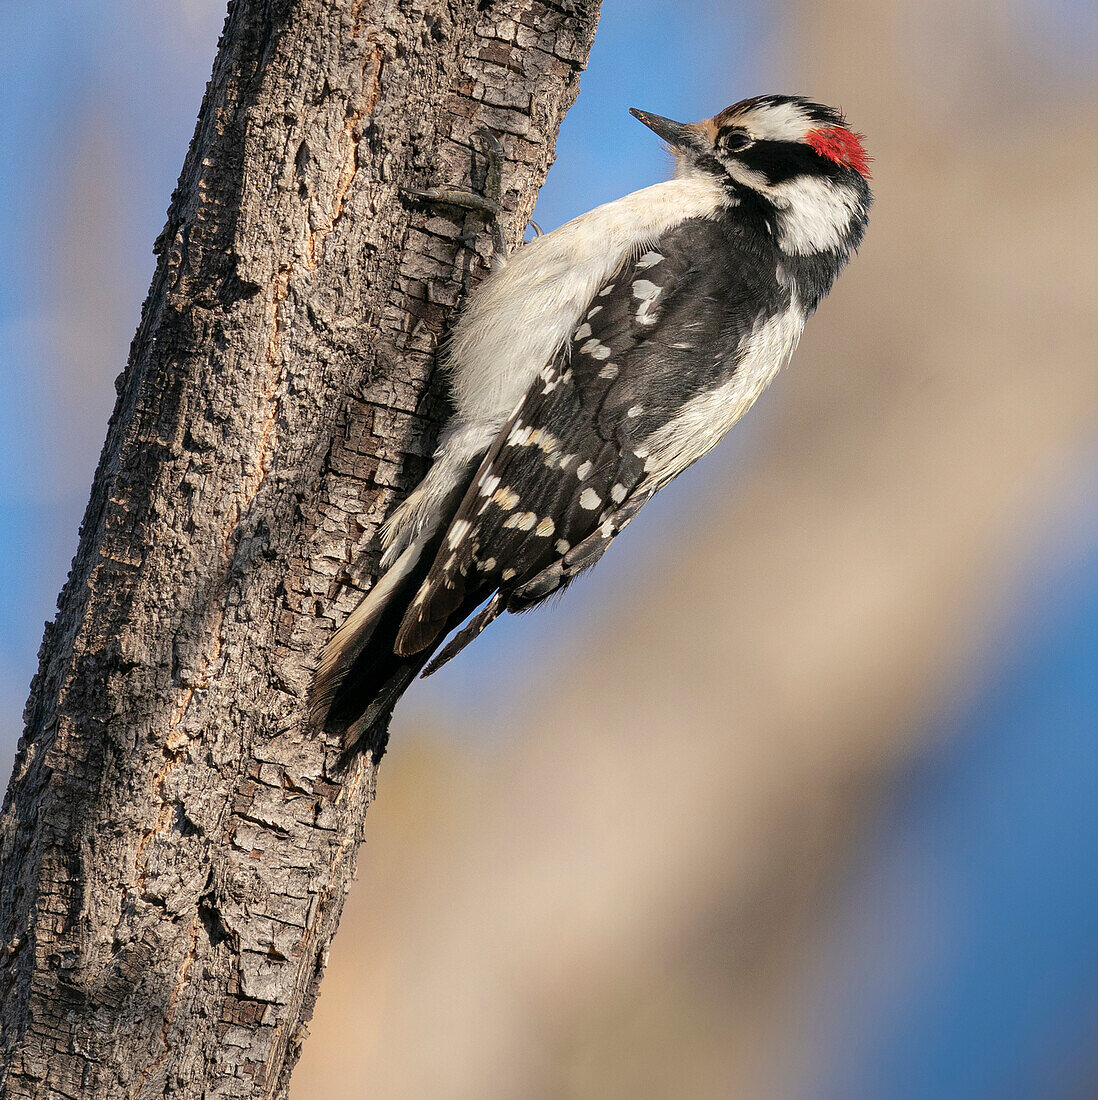 Hairy woodpecker, Ojito de San Antonio trail, New Mexico